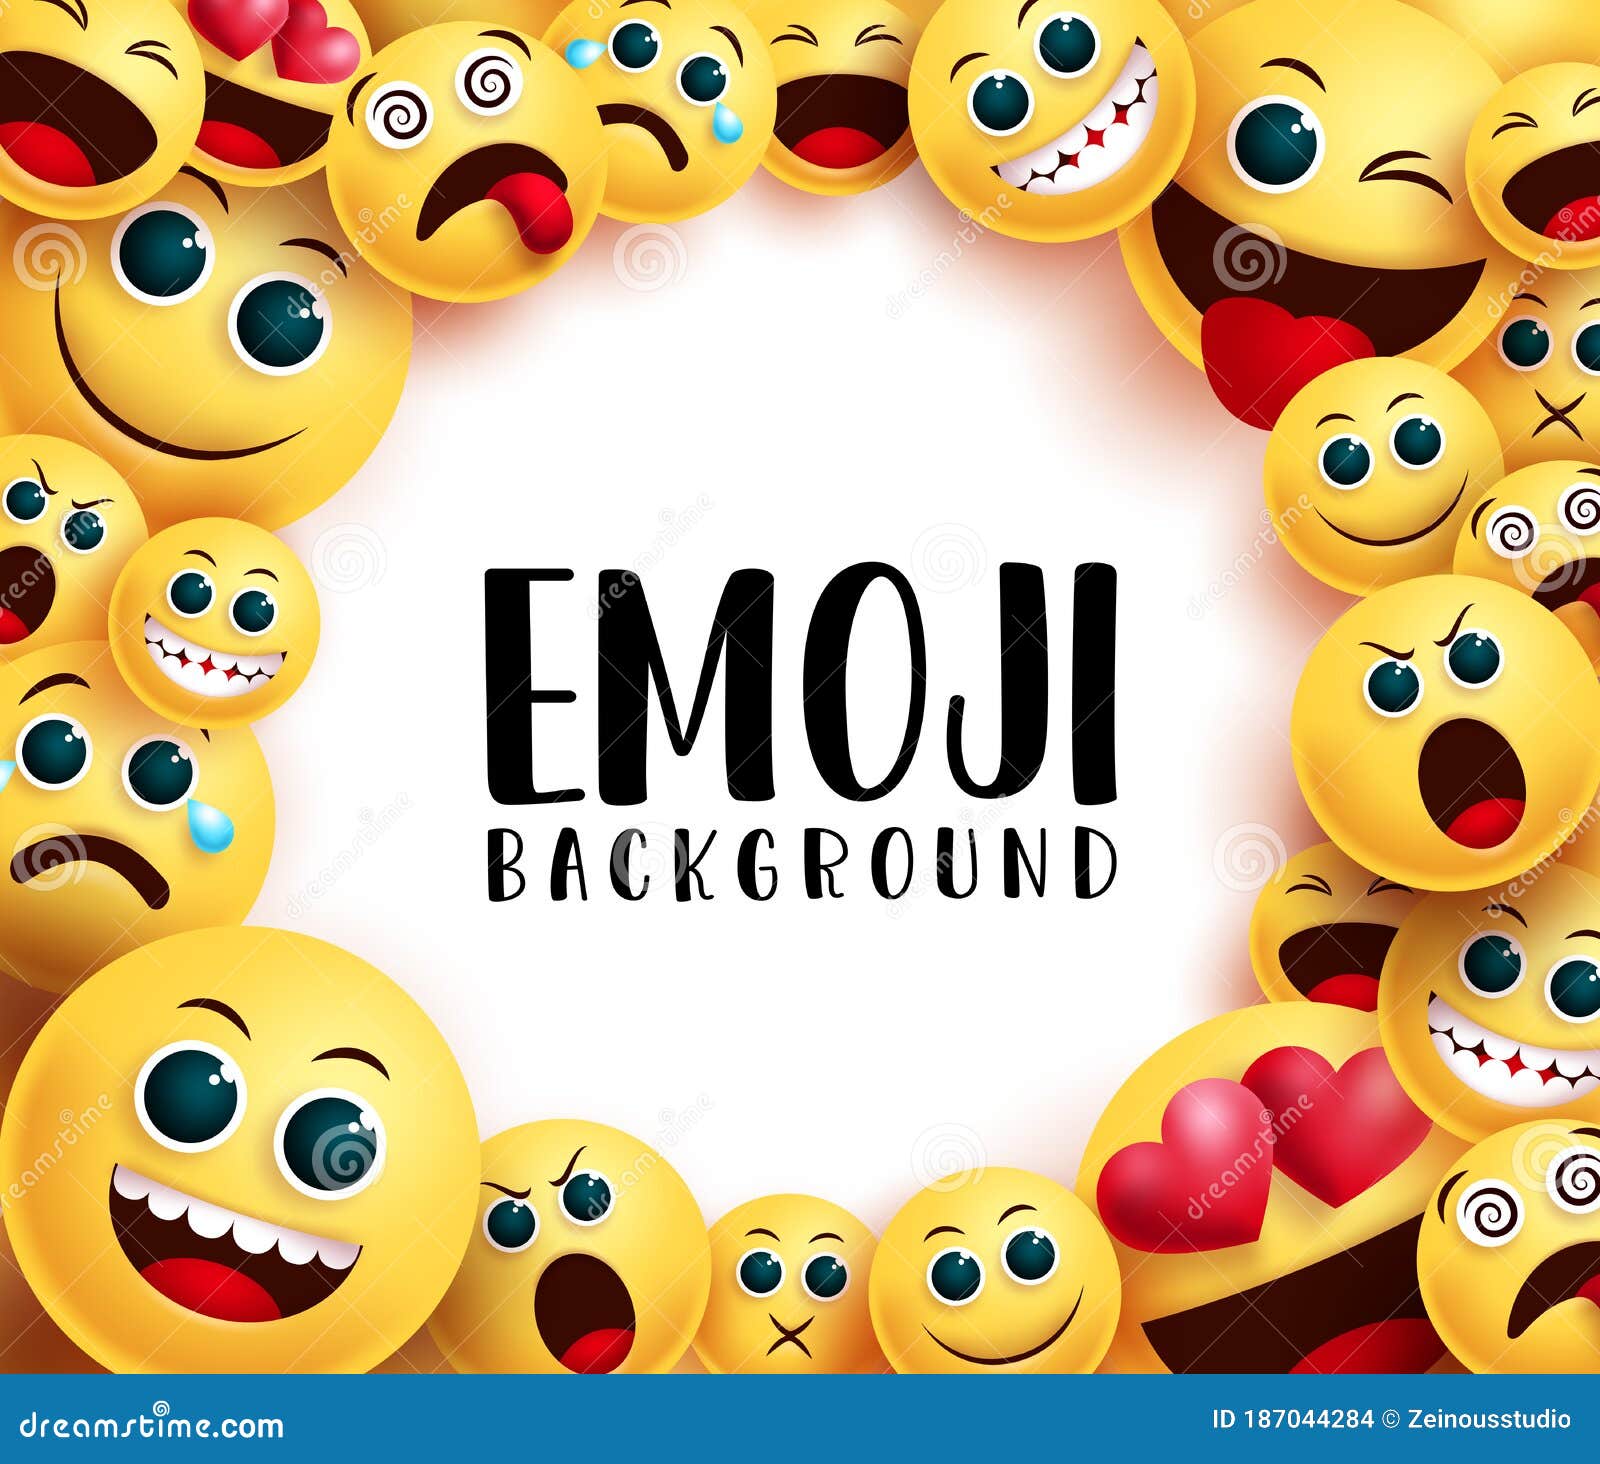 Bạn yêu thích sự vui nhộn và năng động? Hãy truy cập ngay vào mẫu nền Emoji vui nhộn để tìm cho mình những hình nền độc đáo và đầy phong cách. Sẽ rất tiếc nếu bạn bỏ lỡ rất nhiều mẫu nền dành riêng cho những người yêu thích Emoji.